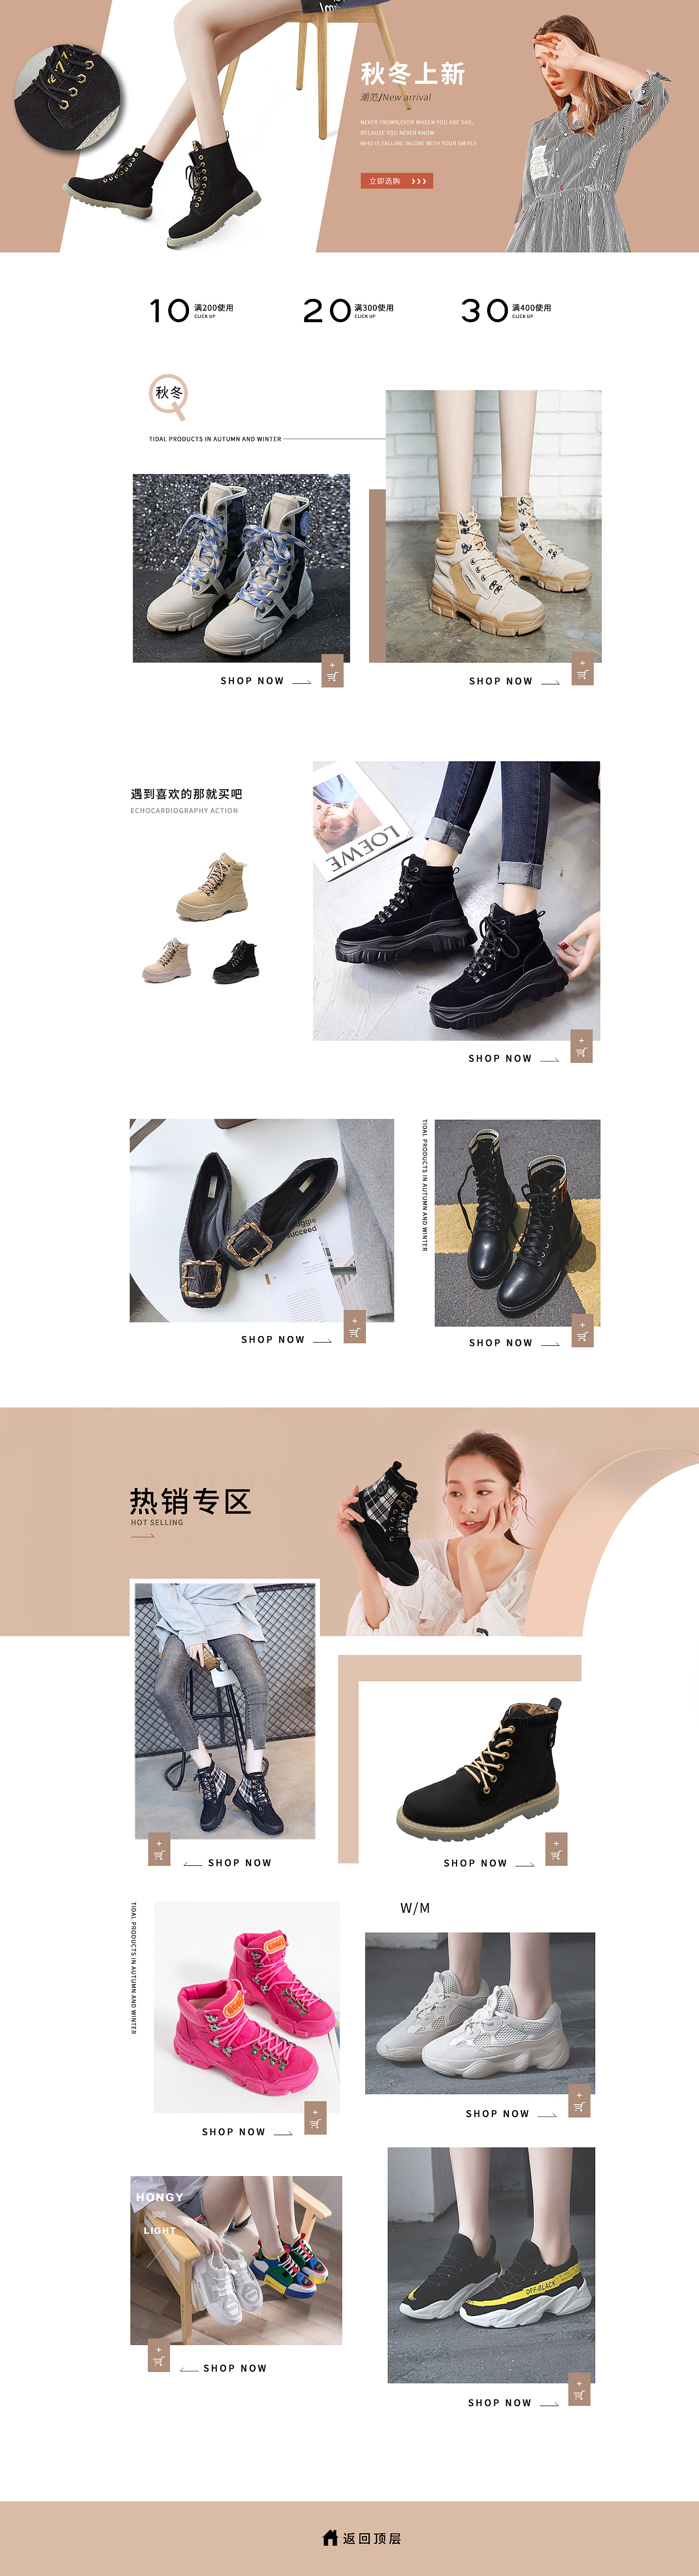 运动鞋广告及摄影作品排版欣赏 - - 大美工dameigong.cn